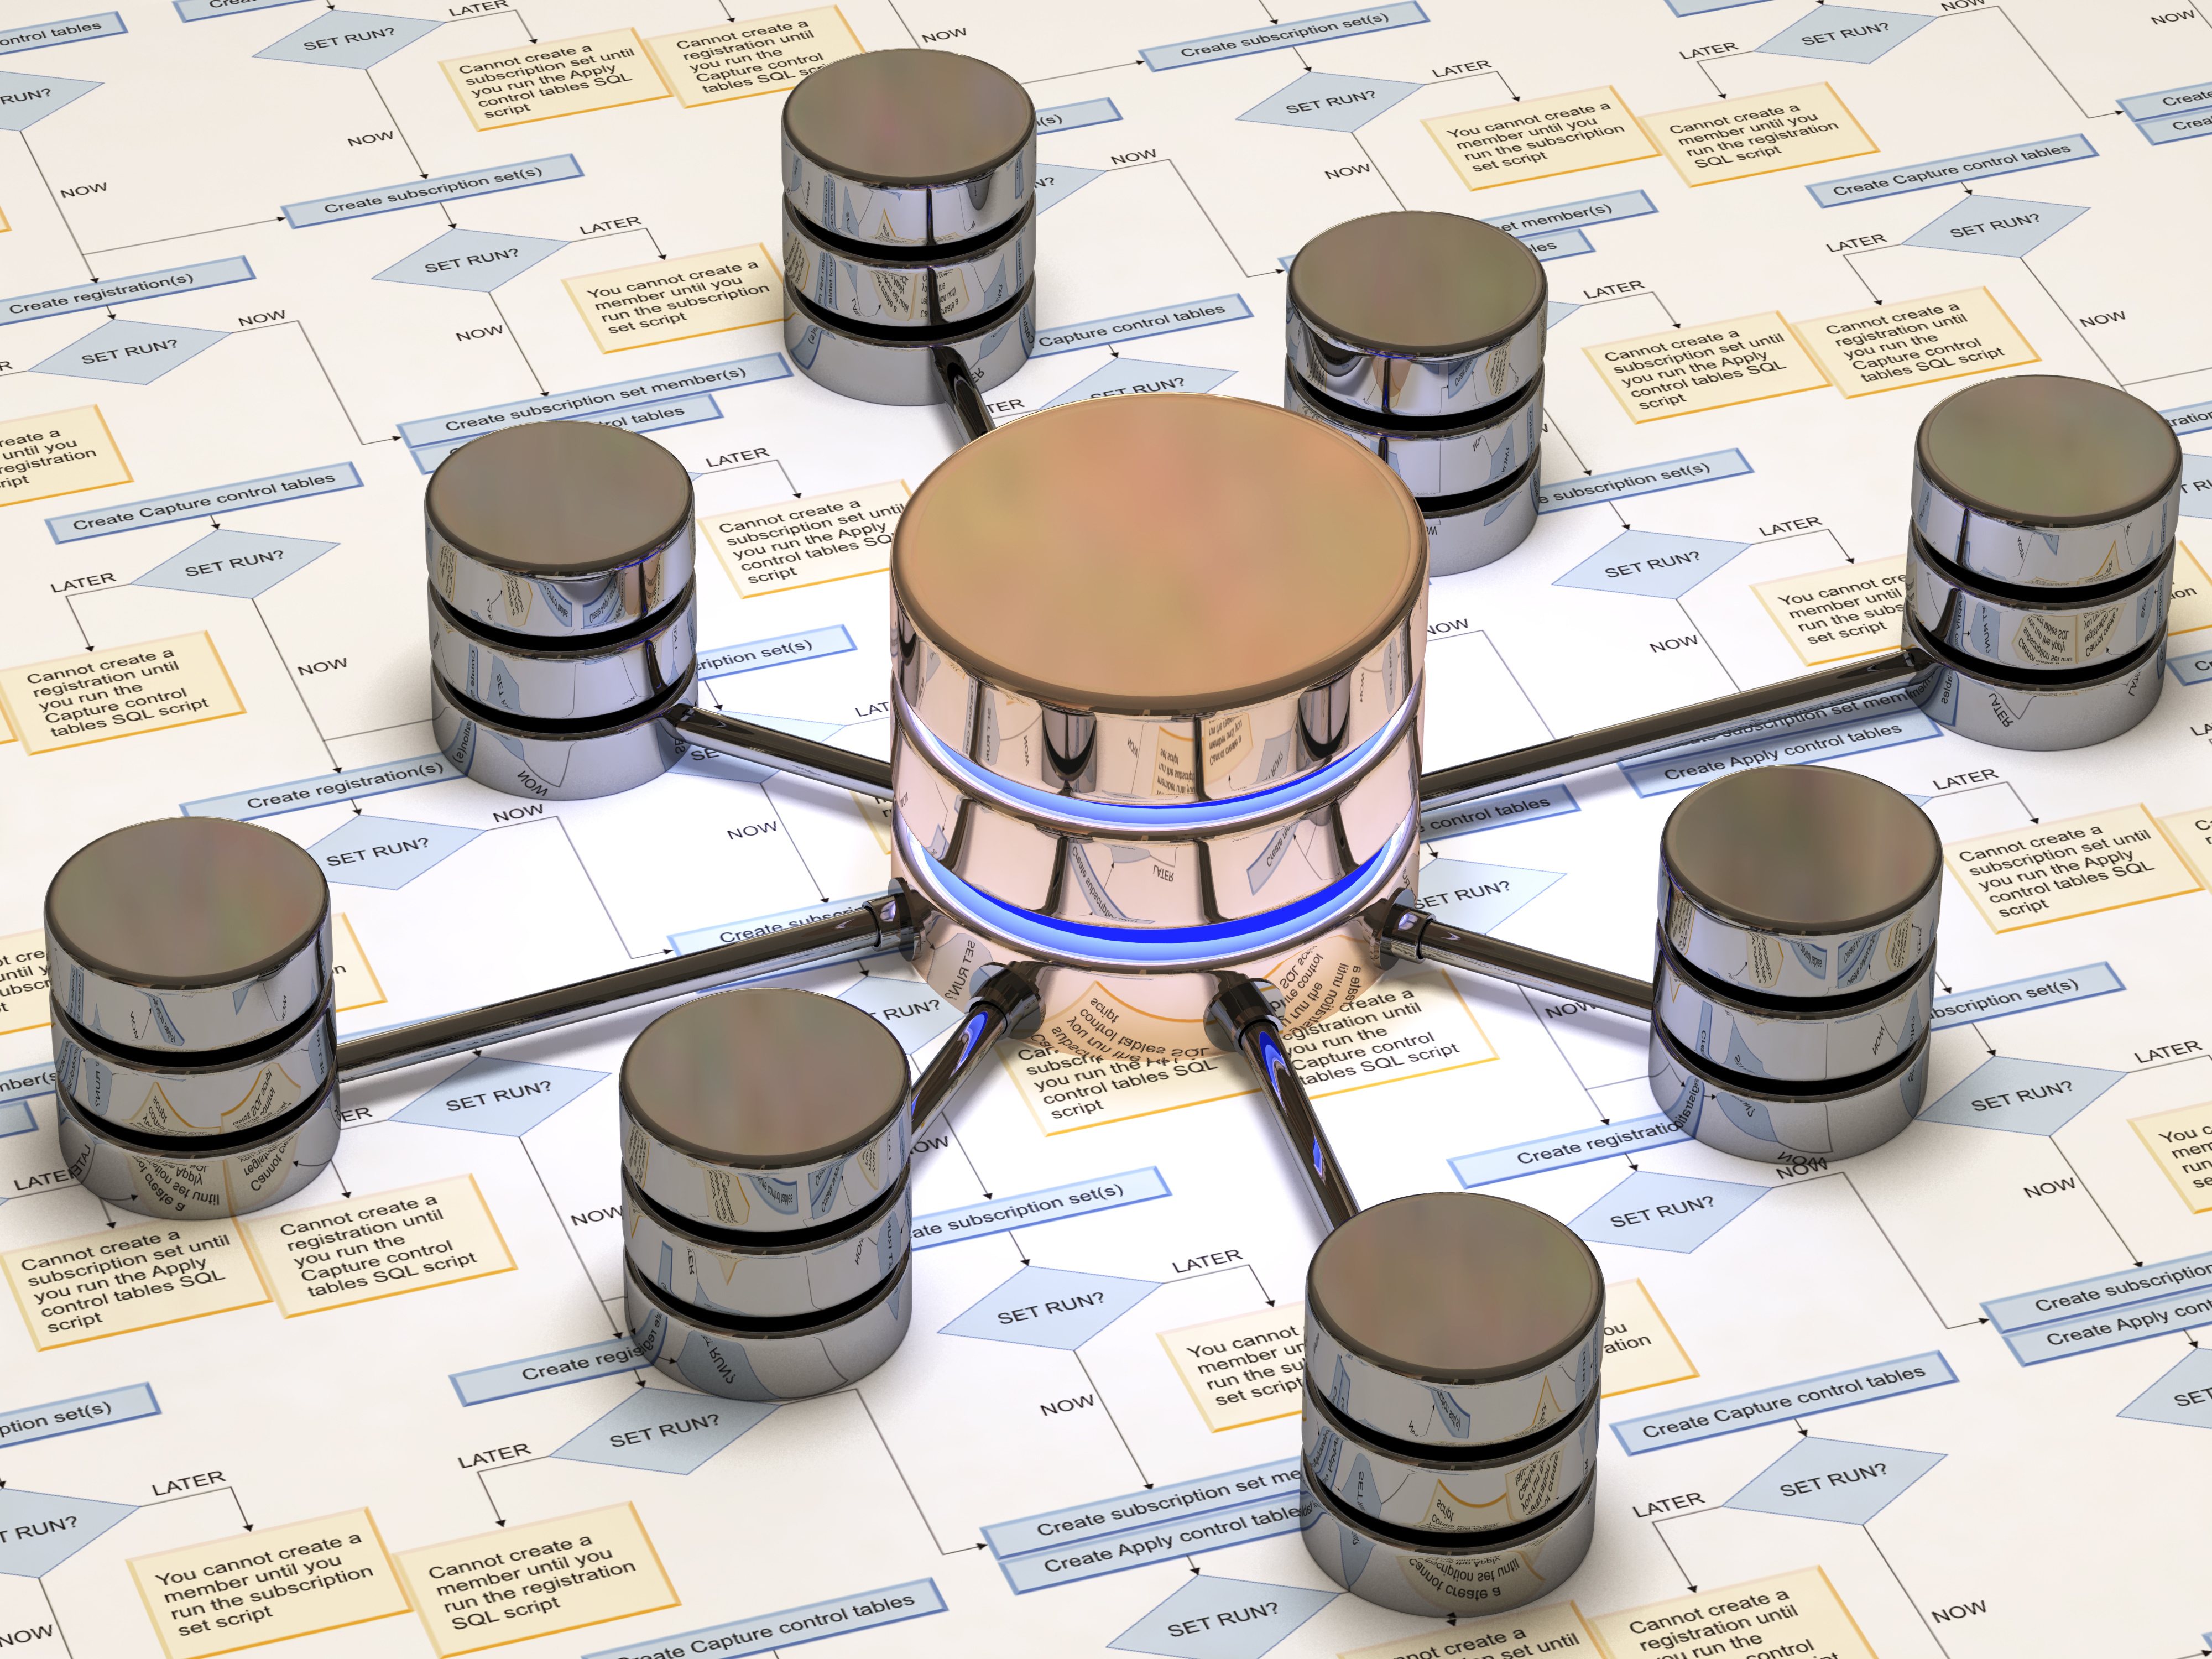 Image depicting SQL server database